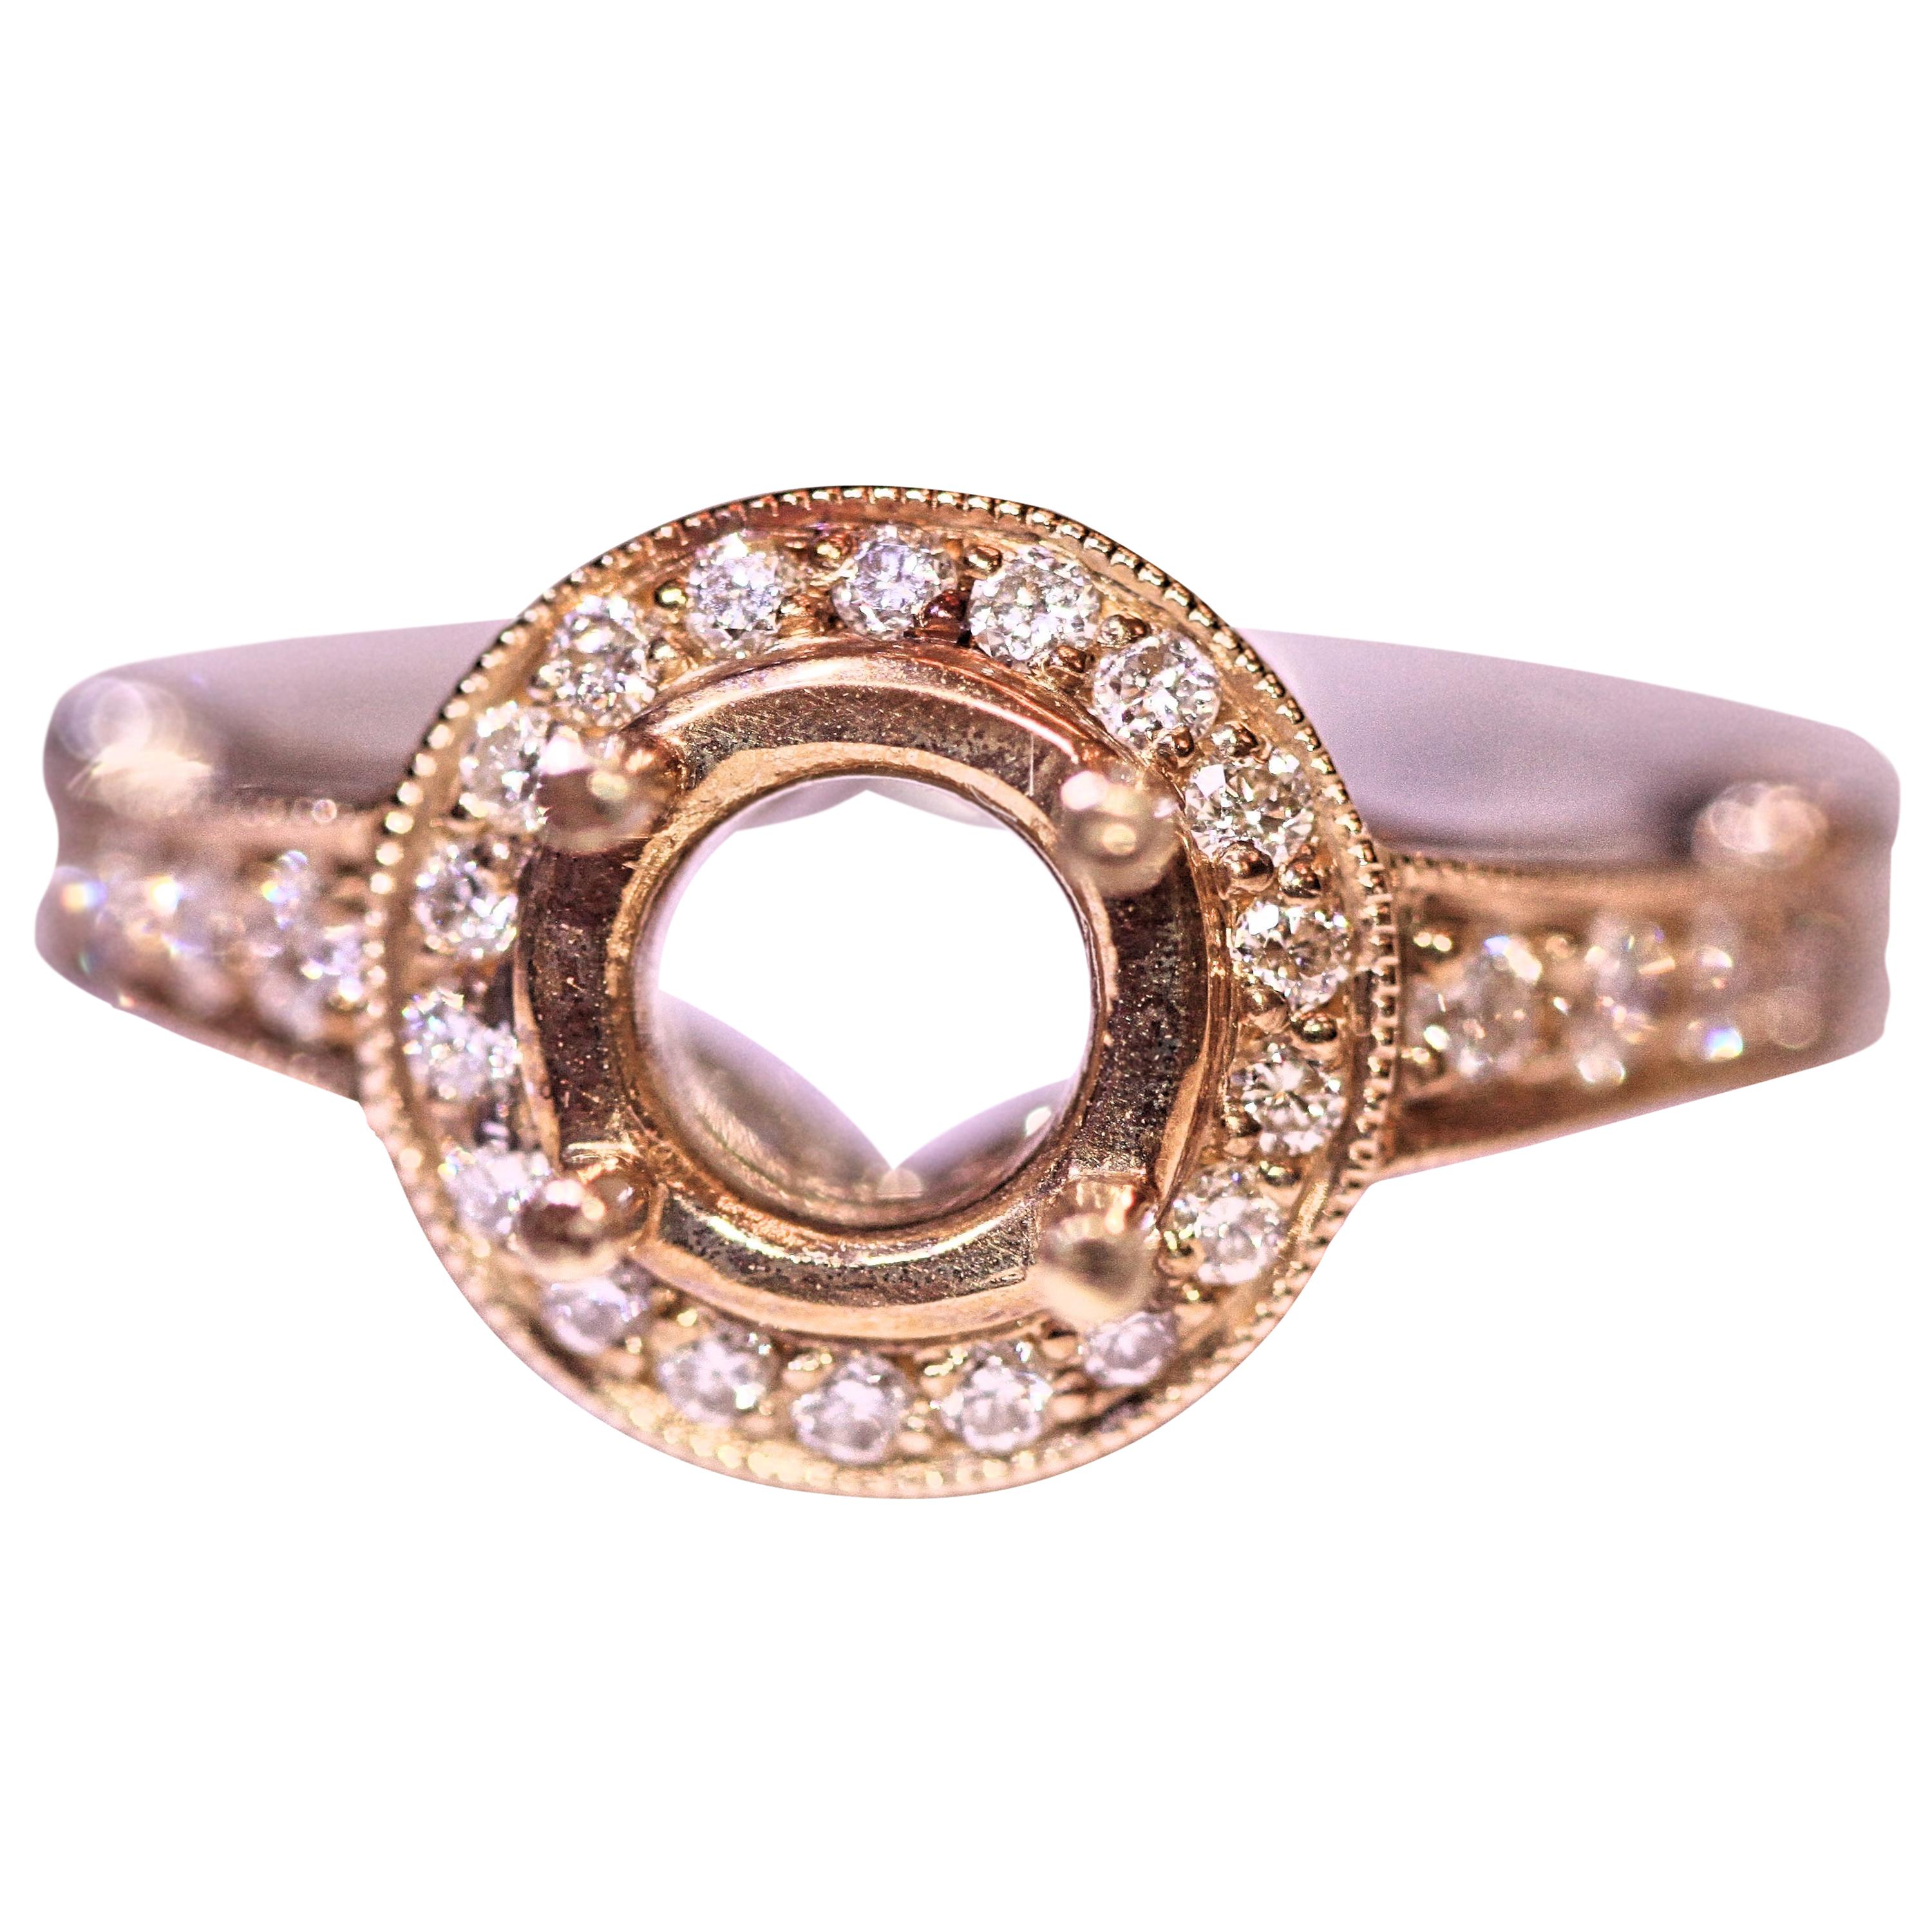 Diamond Engagement Bridal Ring 14 Karat Yellow Gold White Gold .50 Carat Total For Sale